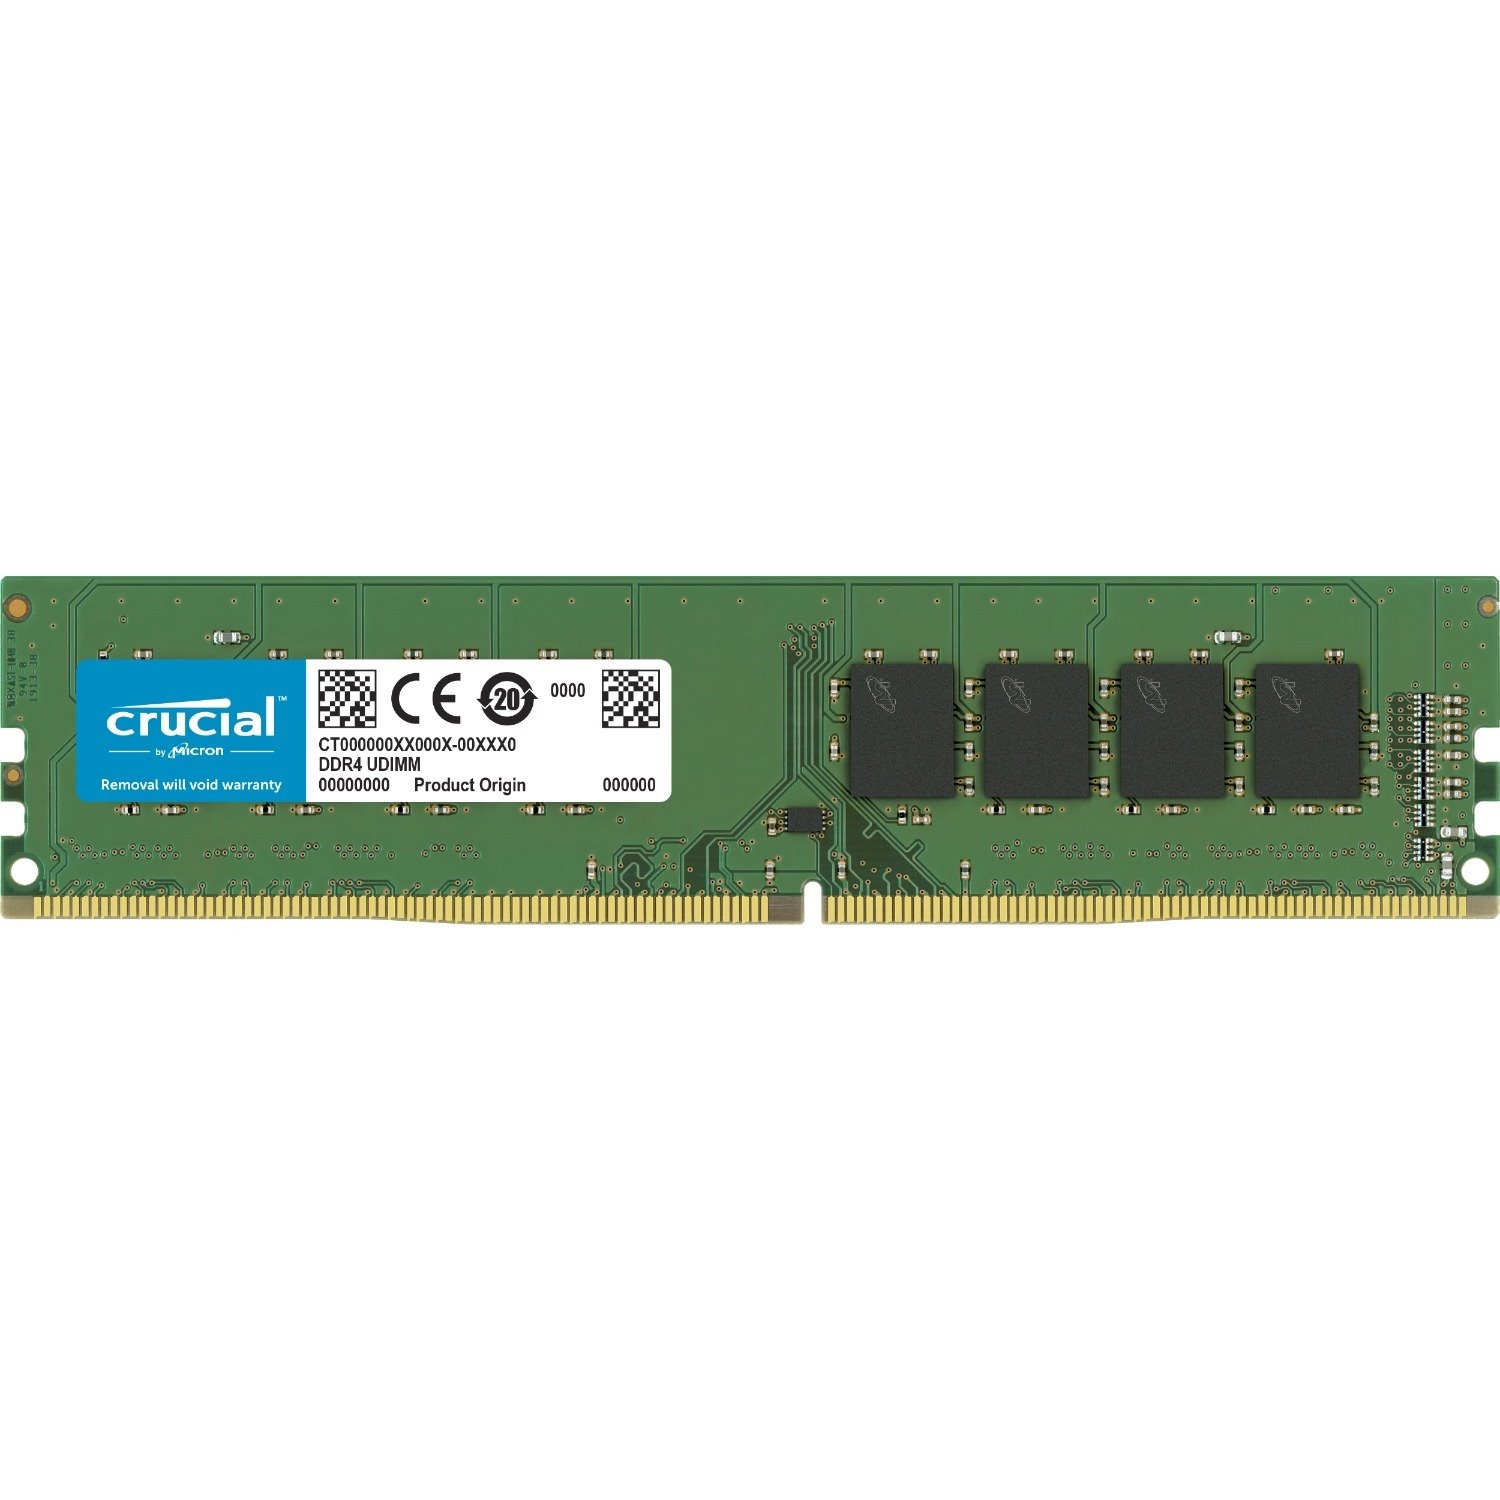 Crucial 4GB DDR4 SDRAM Memory Module